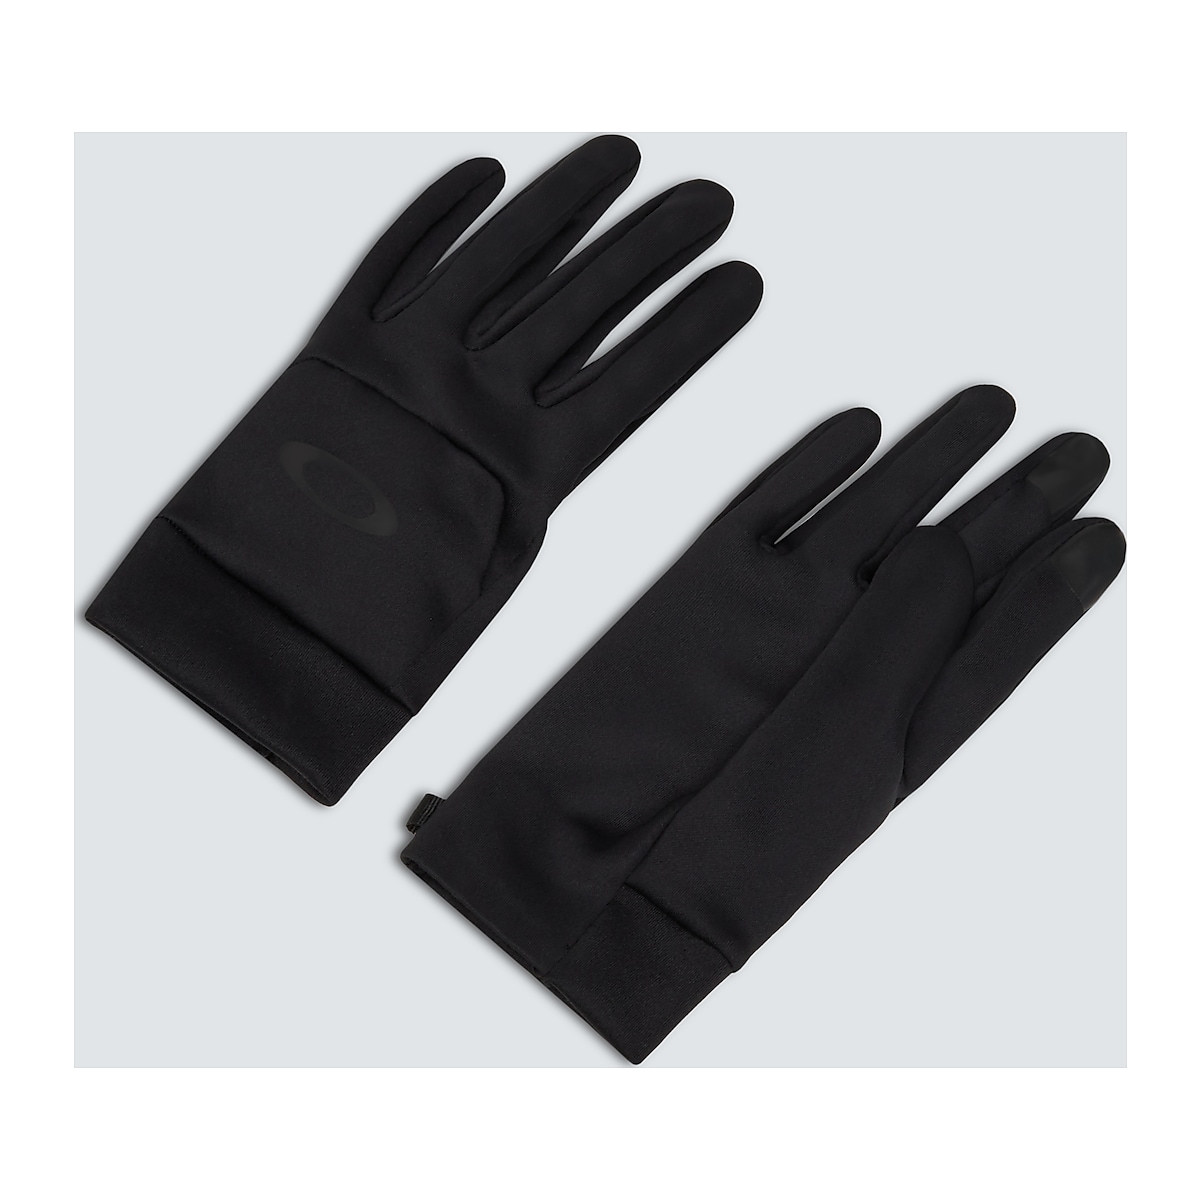 Ventilar participar Rebaja Oakley Core Ellipse Gloves - Blackout | Oakley ES Store (Espanol)